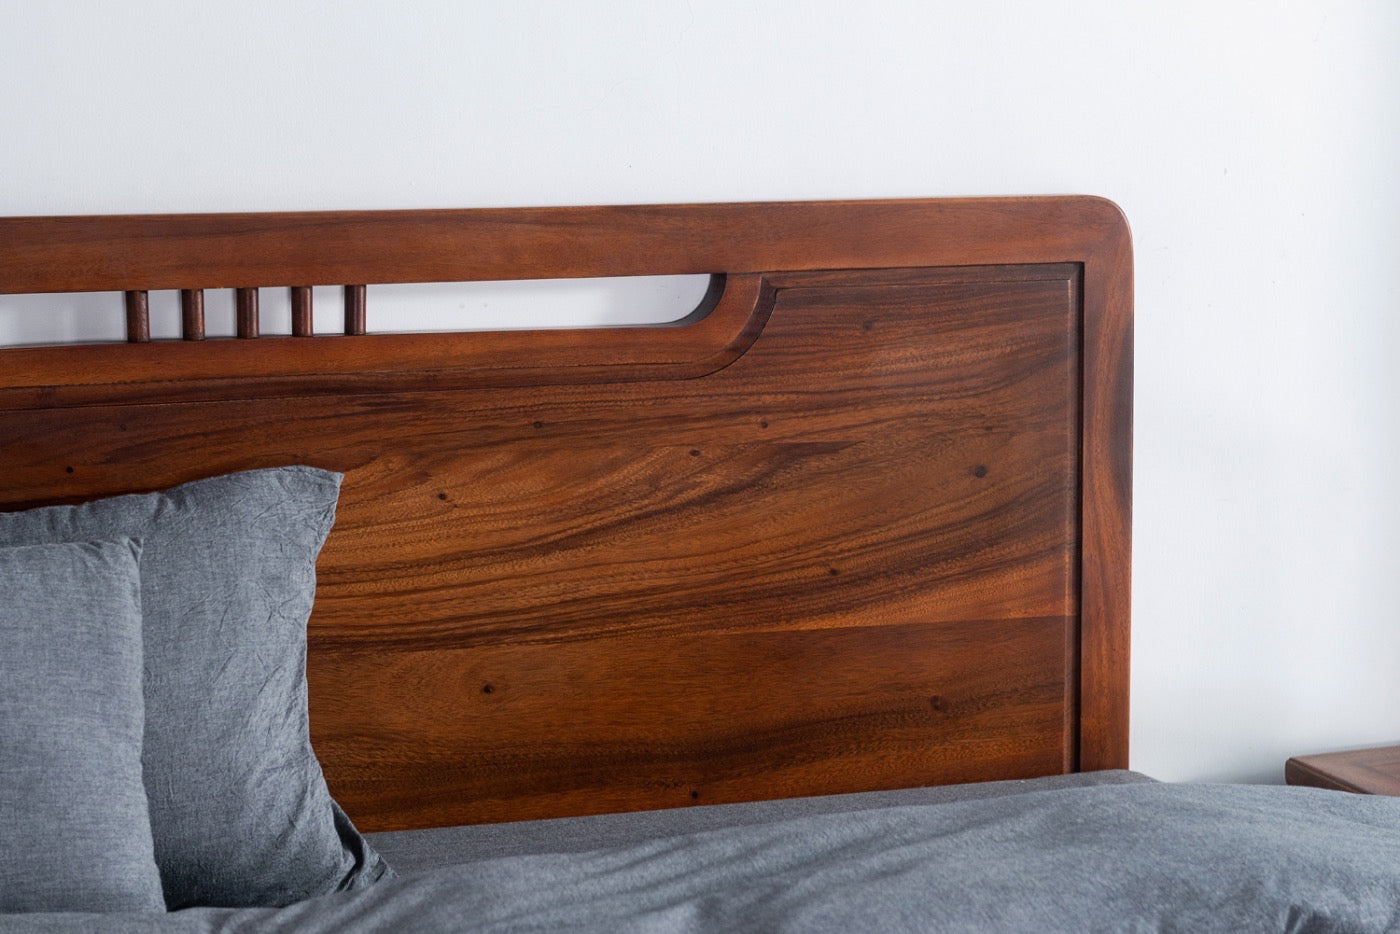 هيكل سرير من خشب الجوز SA الصلب، وإطار سرير من خشب الجوز